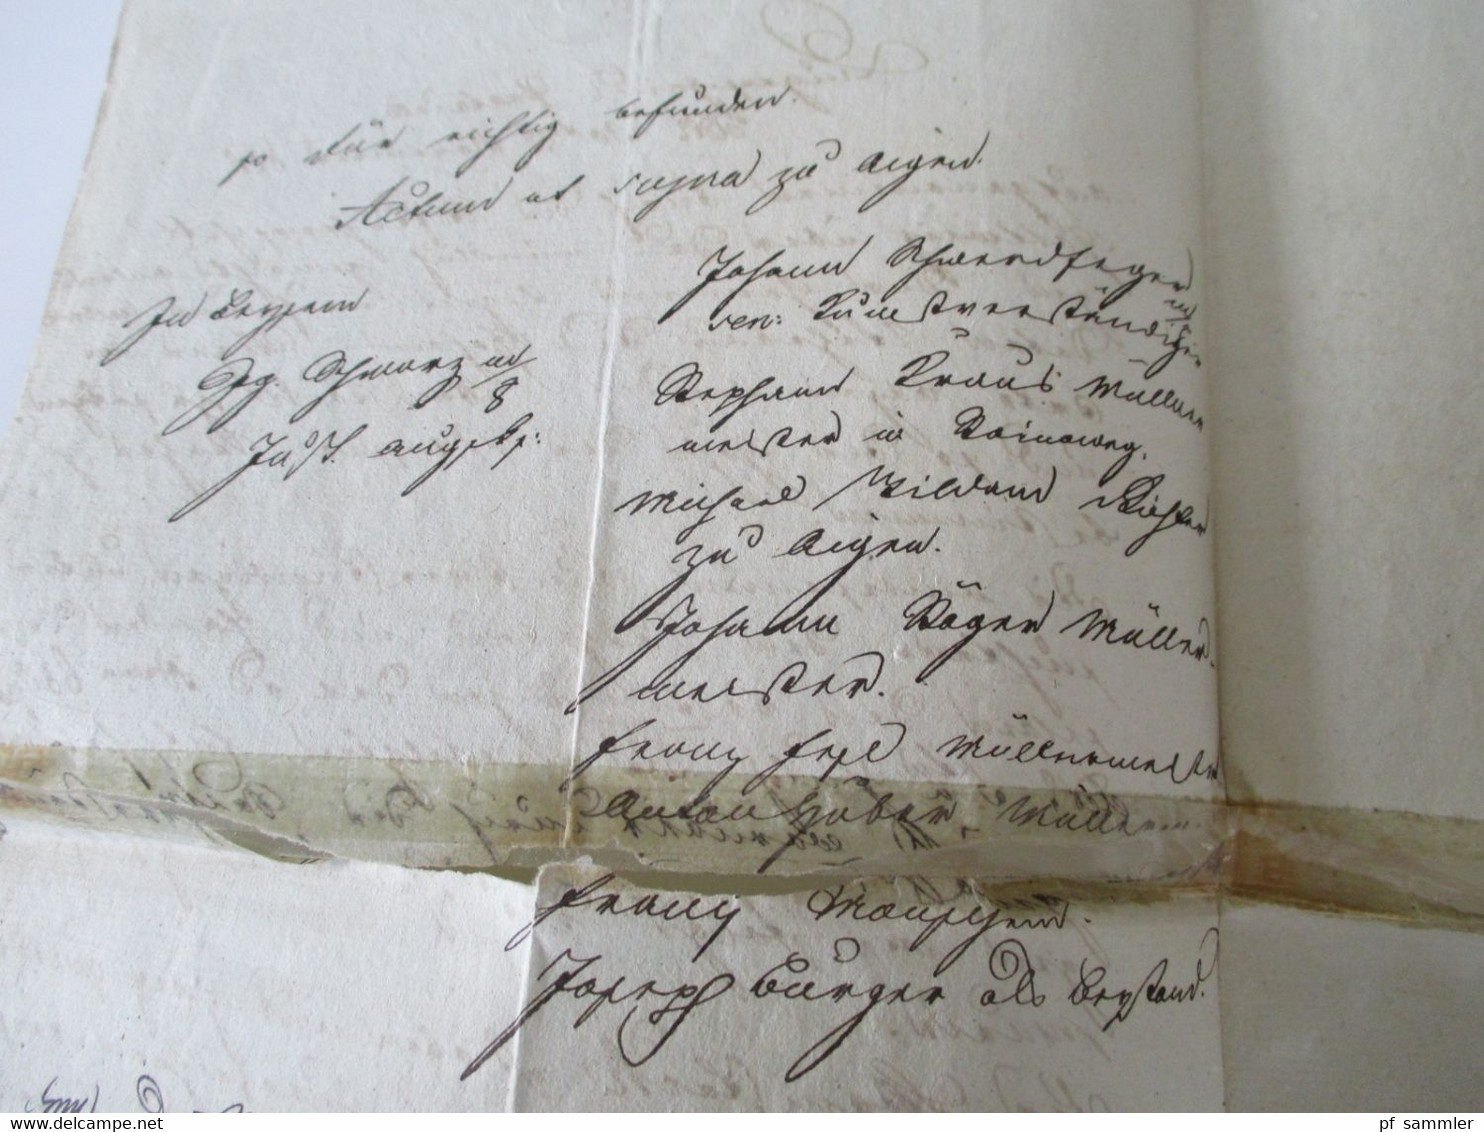 Österreich Vorphila 1827 Beleg / Dokument mit Stempelmarke / Fiskalmarke 15 Kreuzer und Stempel